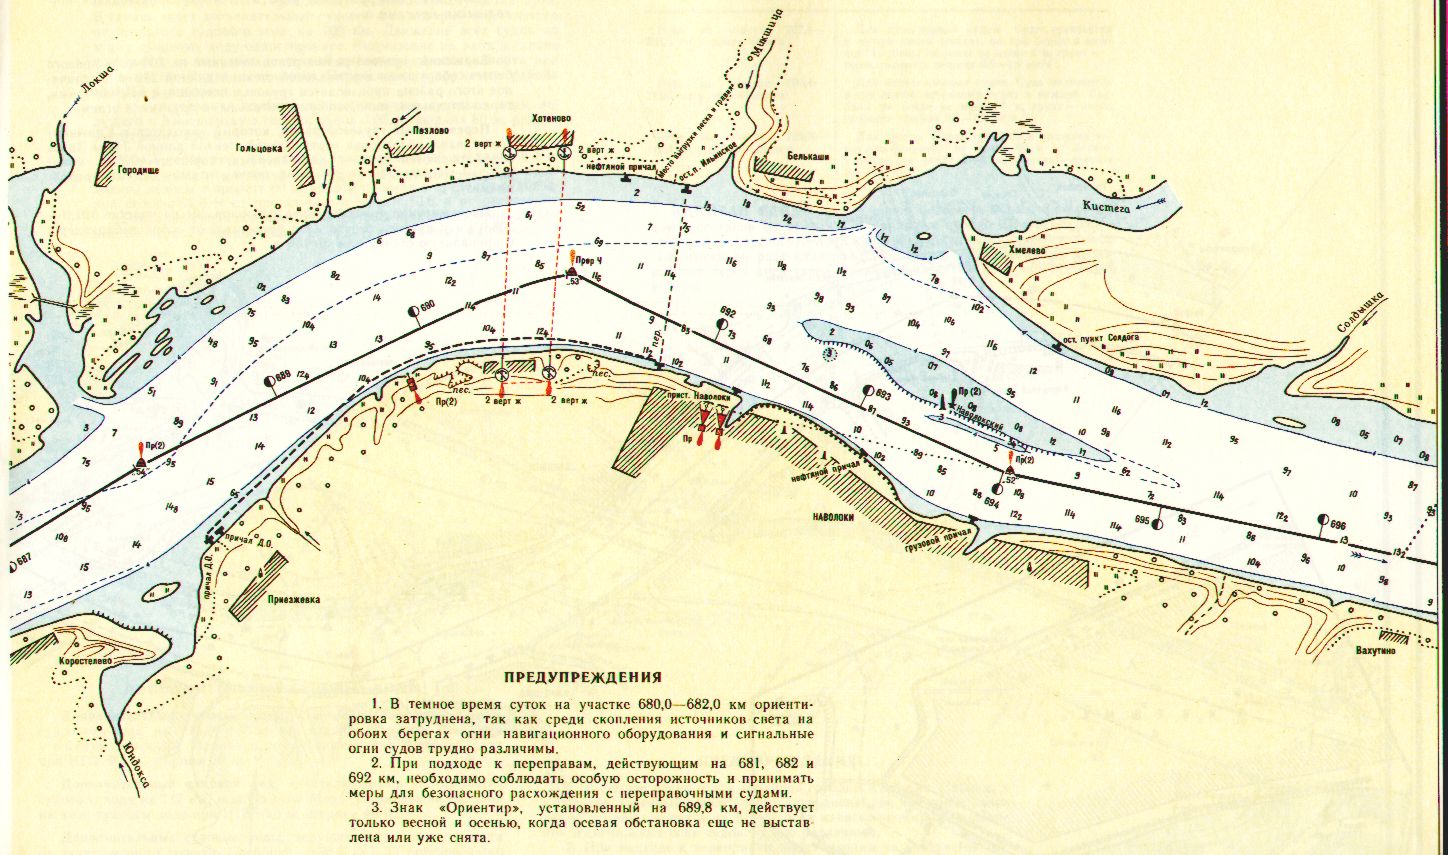 Глубины реки Волга: карта, способы измерения, интересные факты